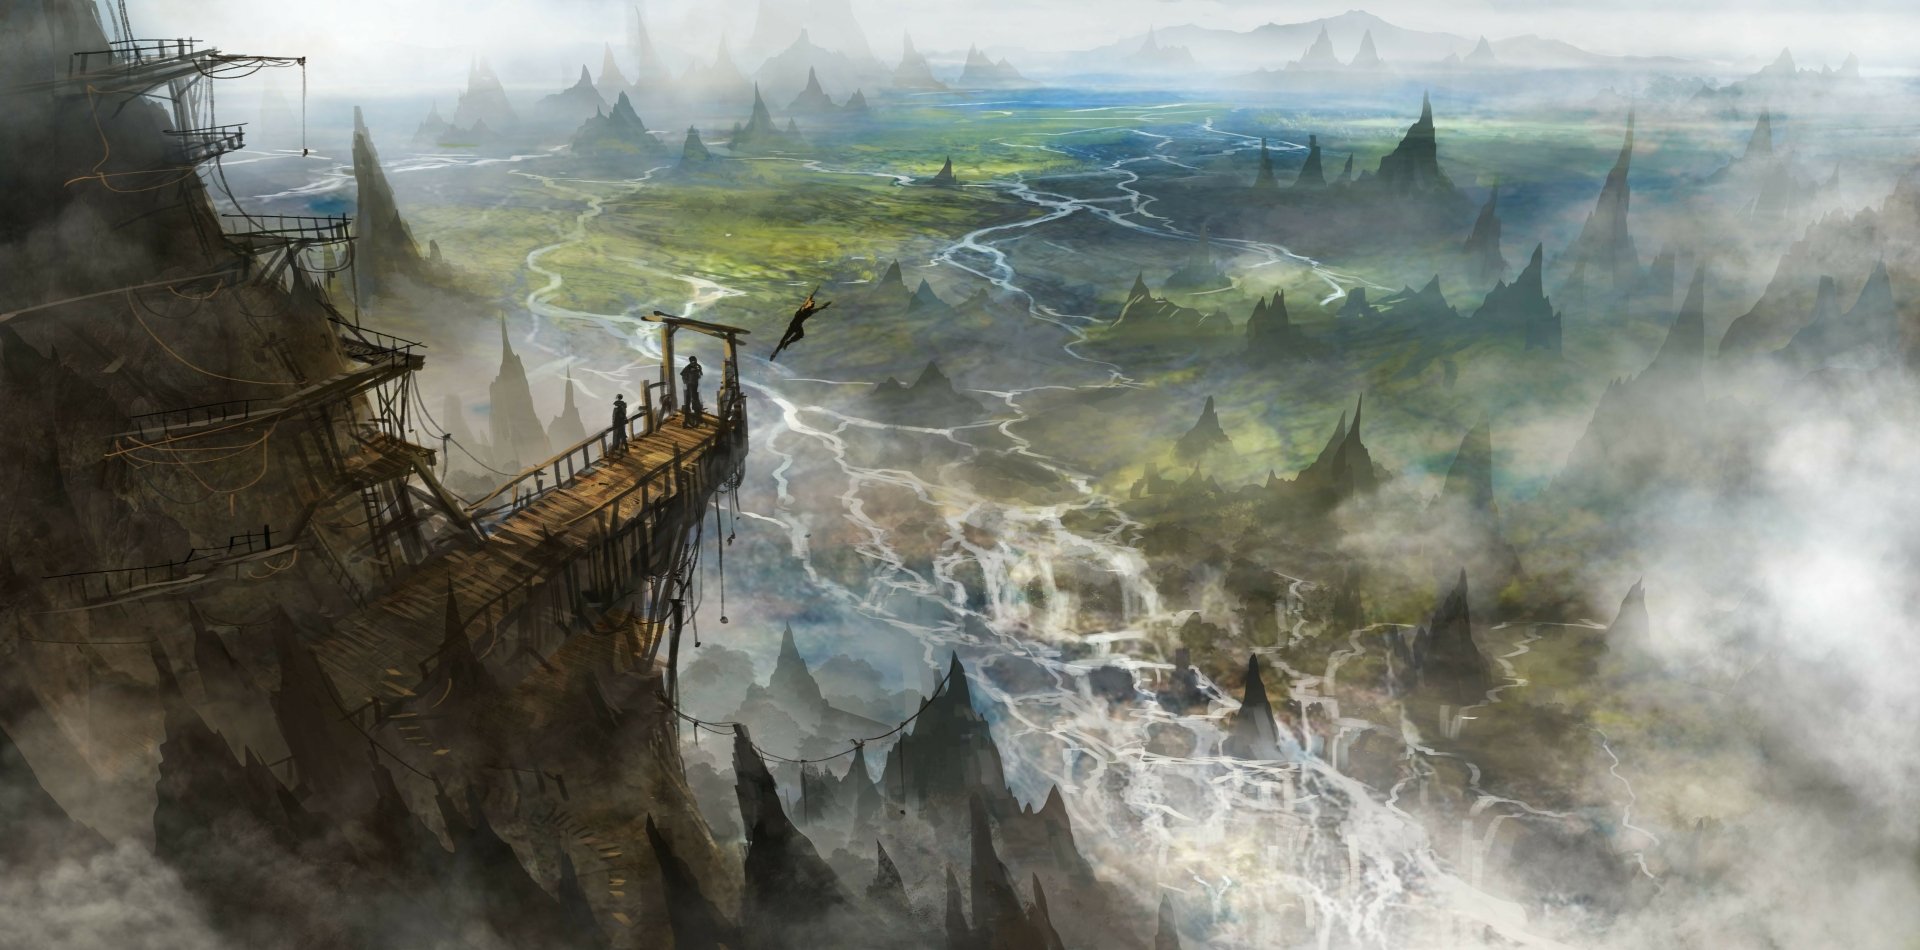 Fantasy Landscape 4k Ultra HD Wallpaper by Jeff Brown